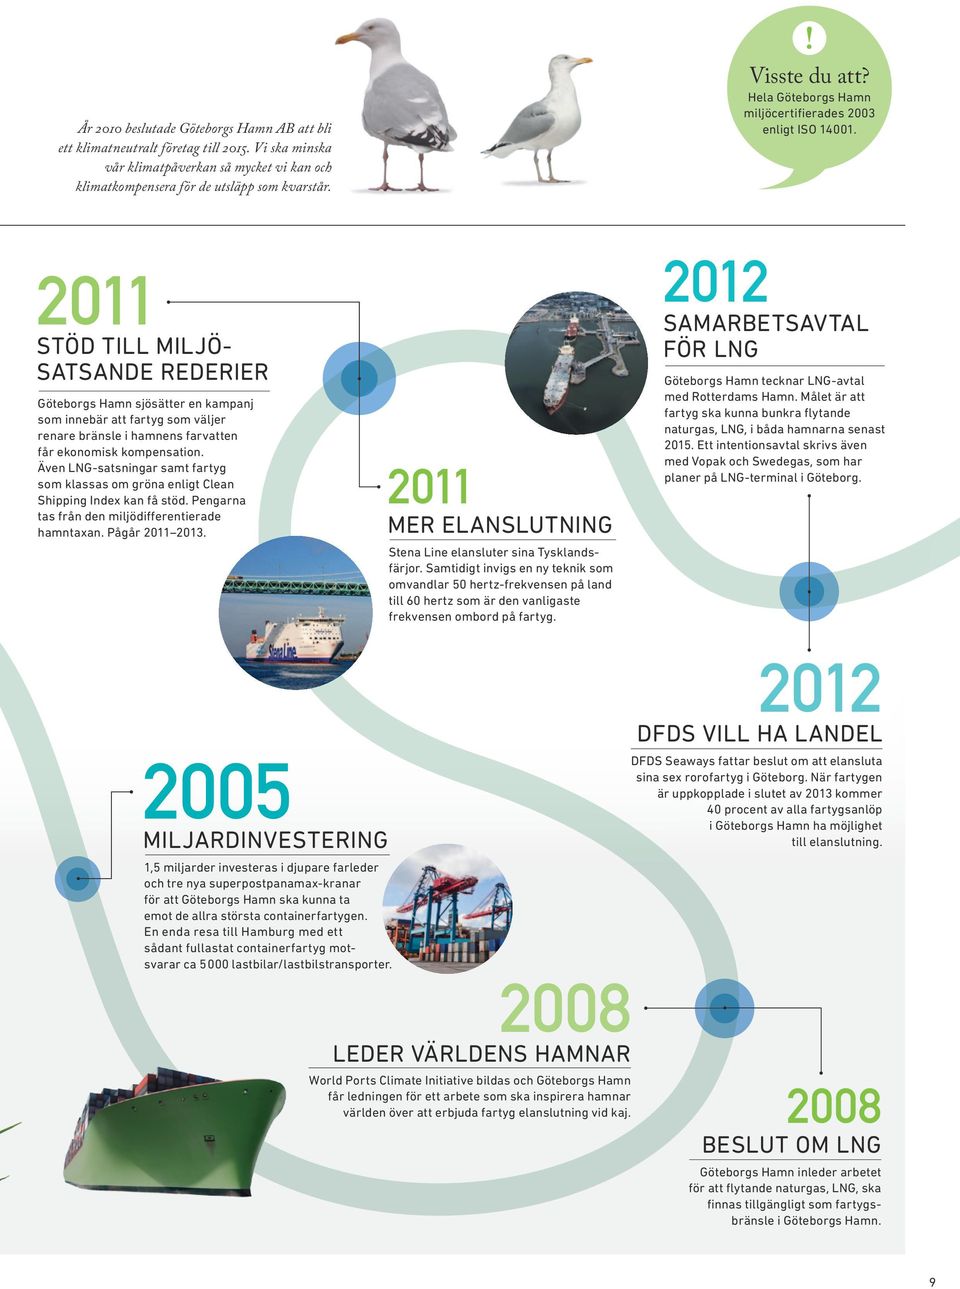 2011 Stöd till miljösatsande rederier Göteborgs Hamn sjösätter en kampanj som innebär att fartyg som väljer renare bränsle i hamnens farvatten får ekonomisk kompensation.